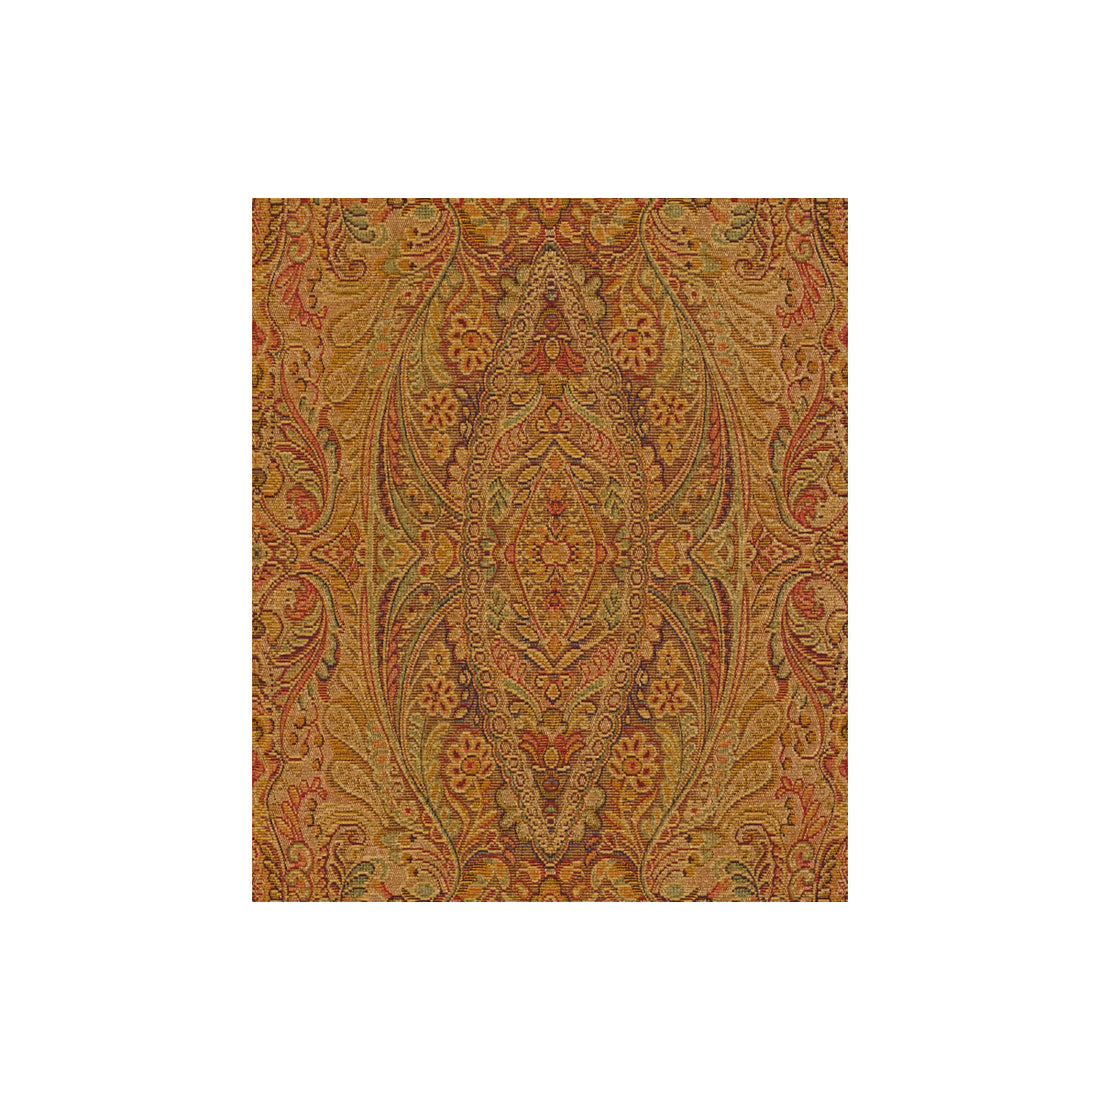 Kravet Basics fabric in 33798-324 color - pattern 33798.324.0 - by Kravet Basics